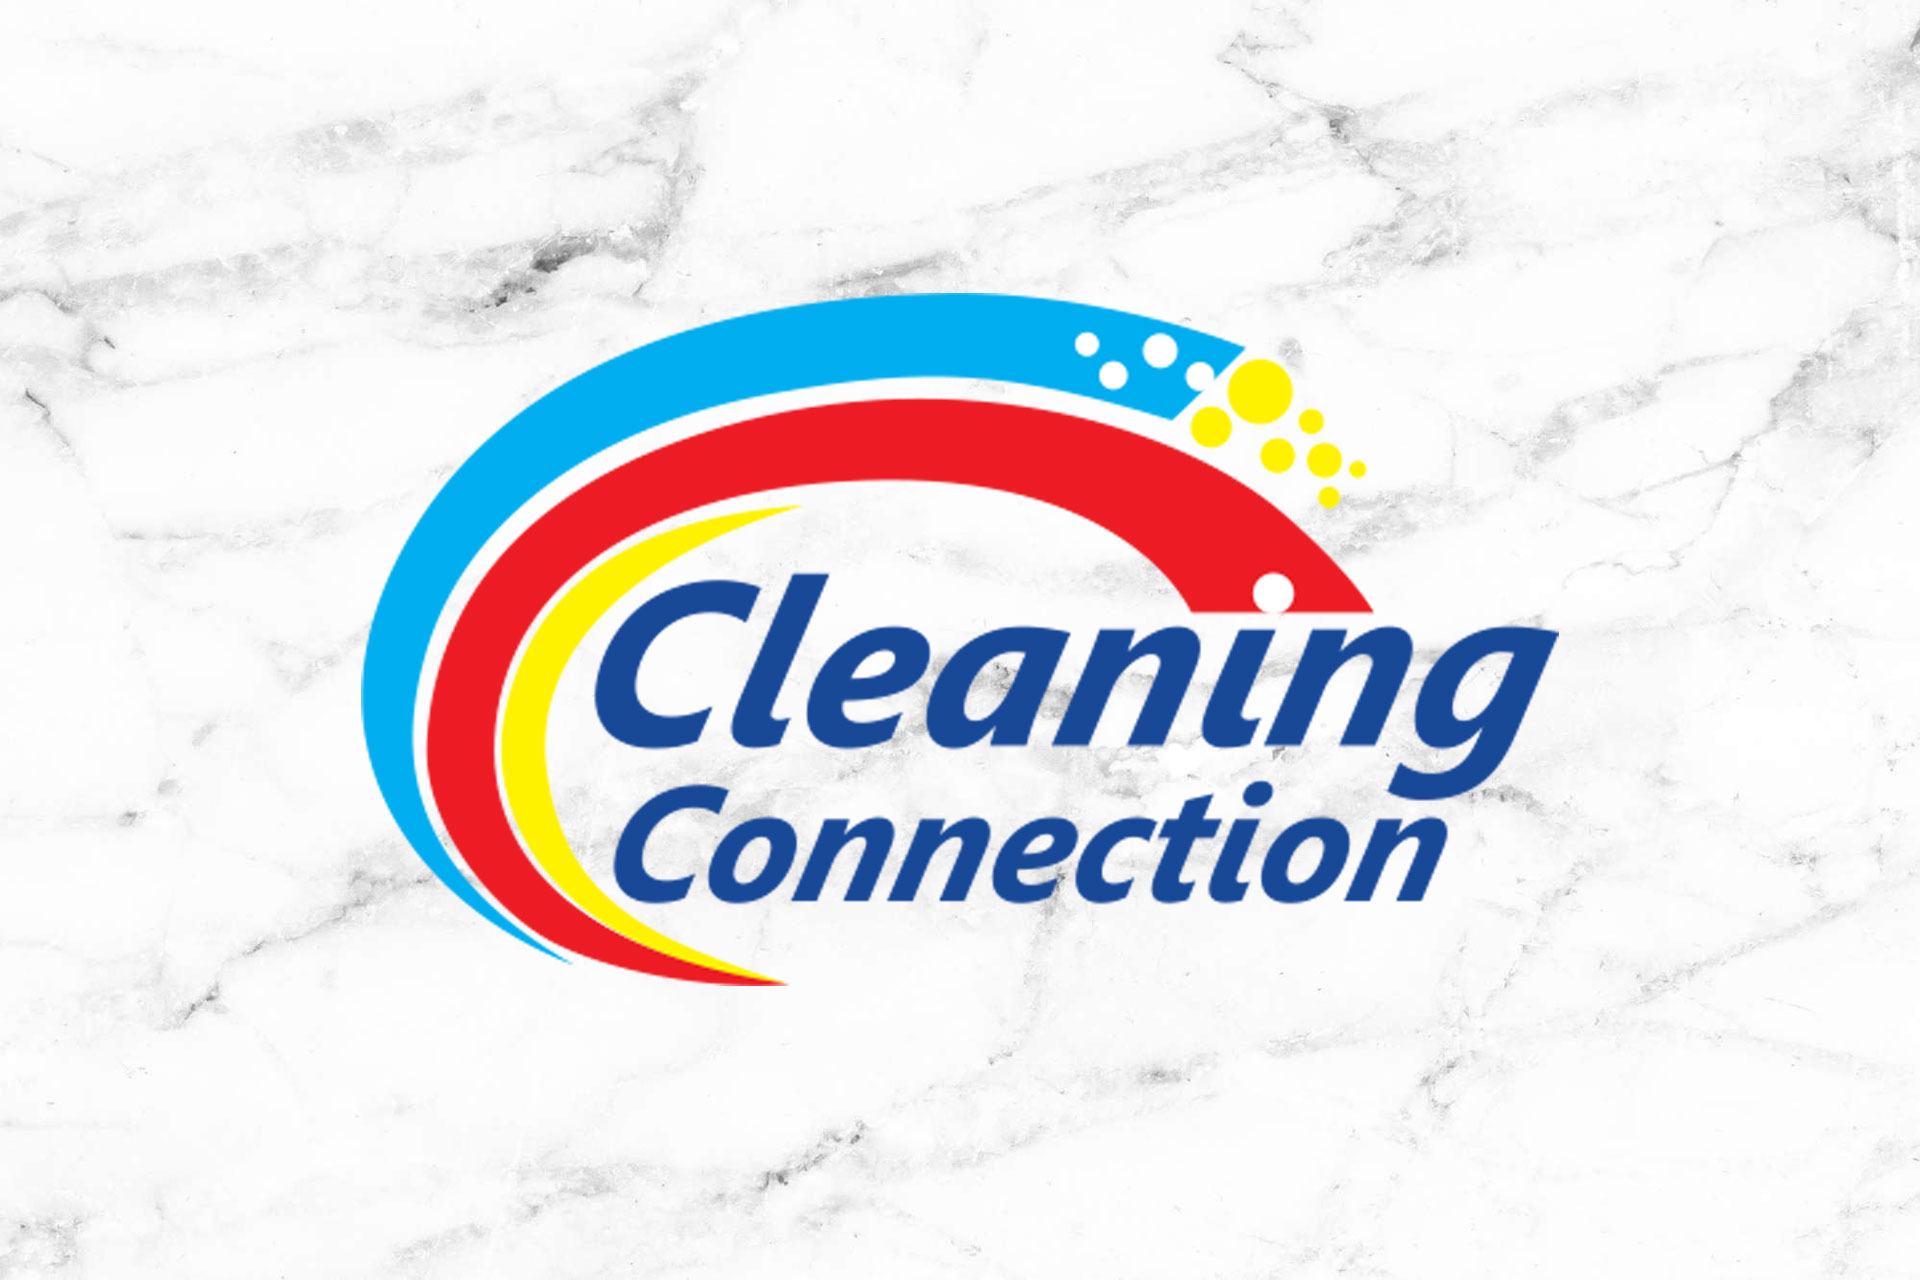 Clean Logo